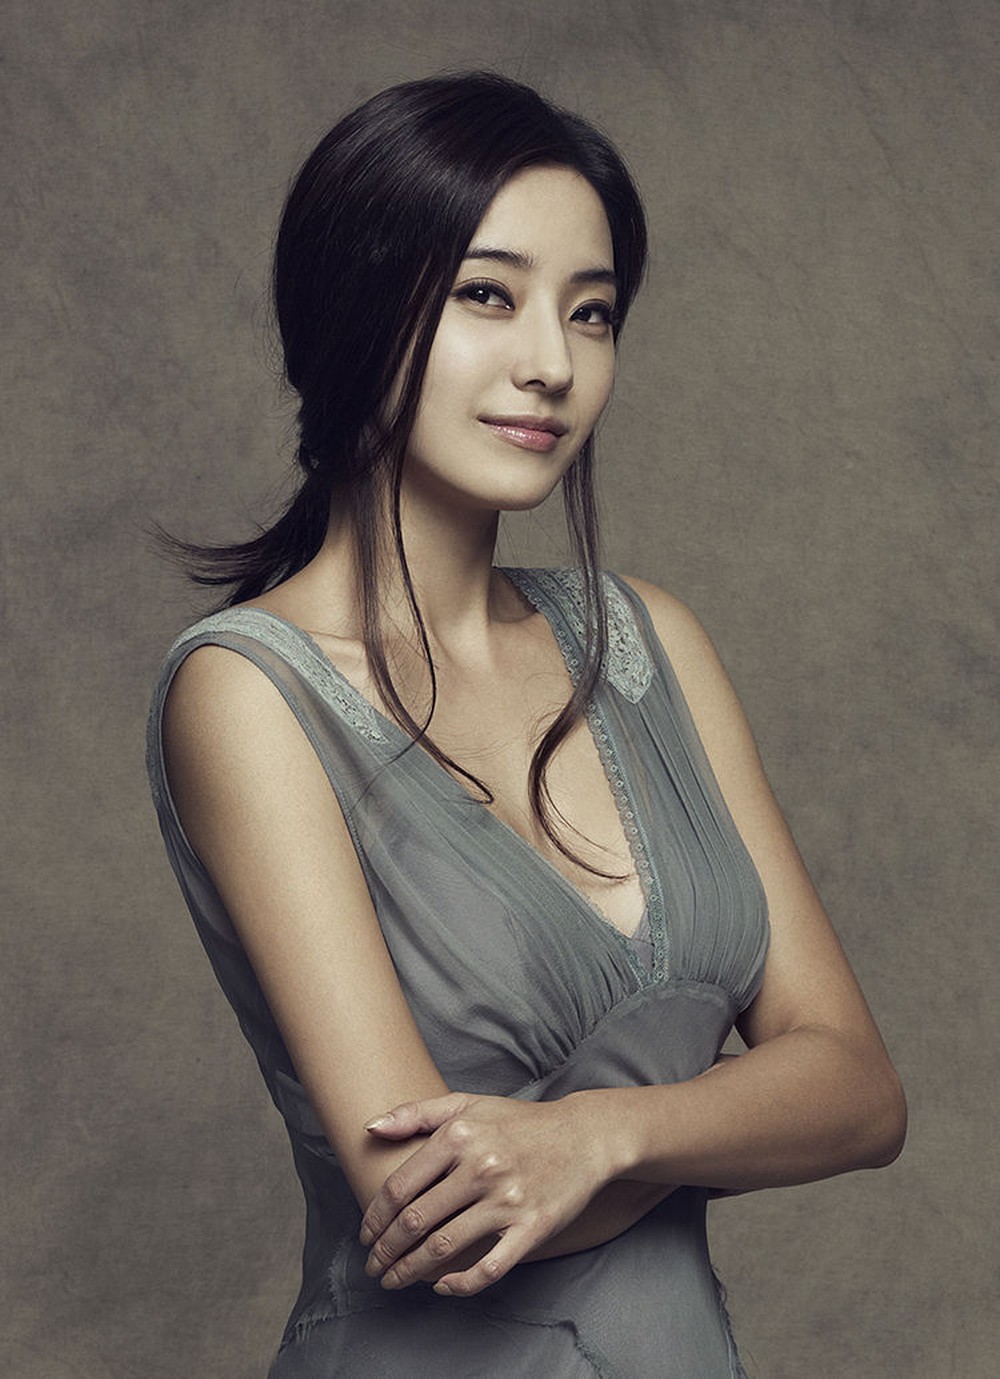 Cuộc sống của người đẹp từng ghét cay ghét đắng Song Hye Kyo: Cuộc hôn nhân viên mãn cùng bạn thân cấp 3, 17 năm vẫn bền chặt - Ảnh 4.